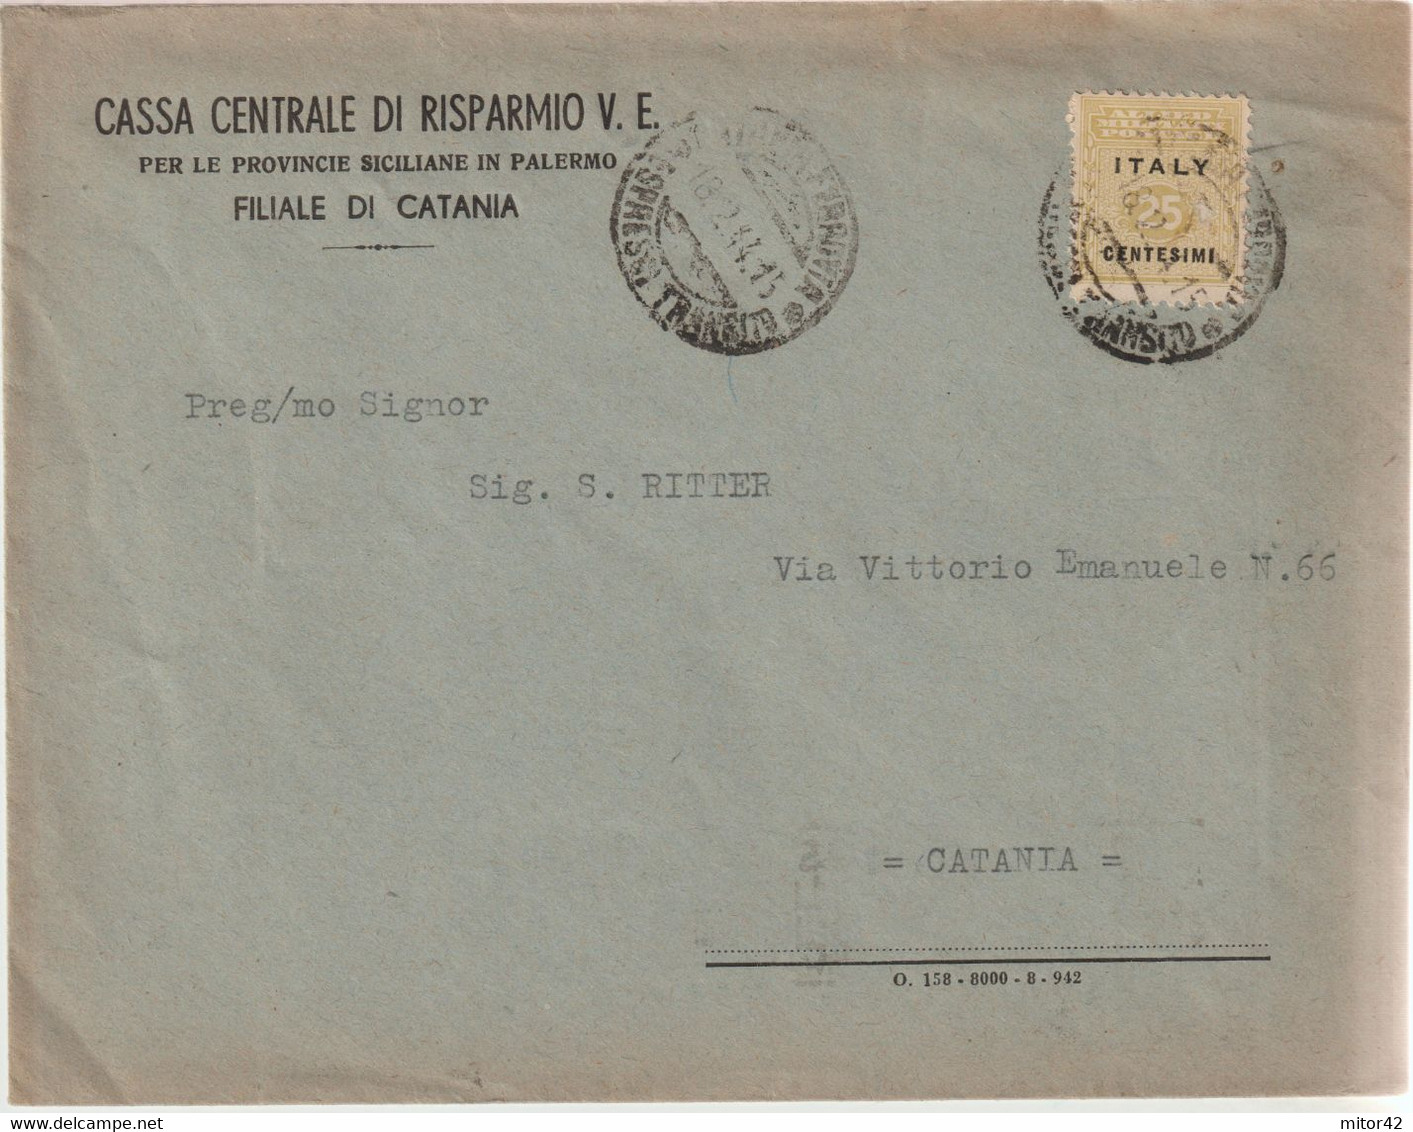 135-Amgot-Occupazione Alleata Sicilia-Busta Intestata-Cassa Centrale Risparmio V.E.-25c. Da E X Catania - Anglo-american Occ.: Sicily